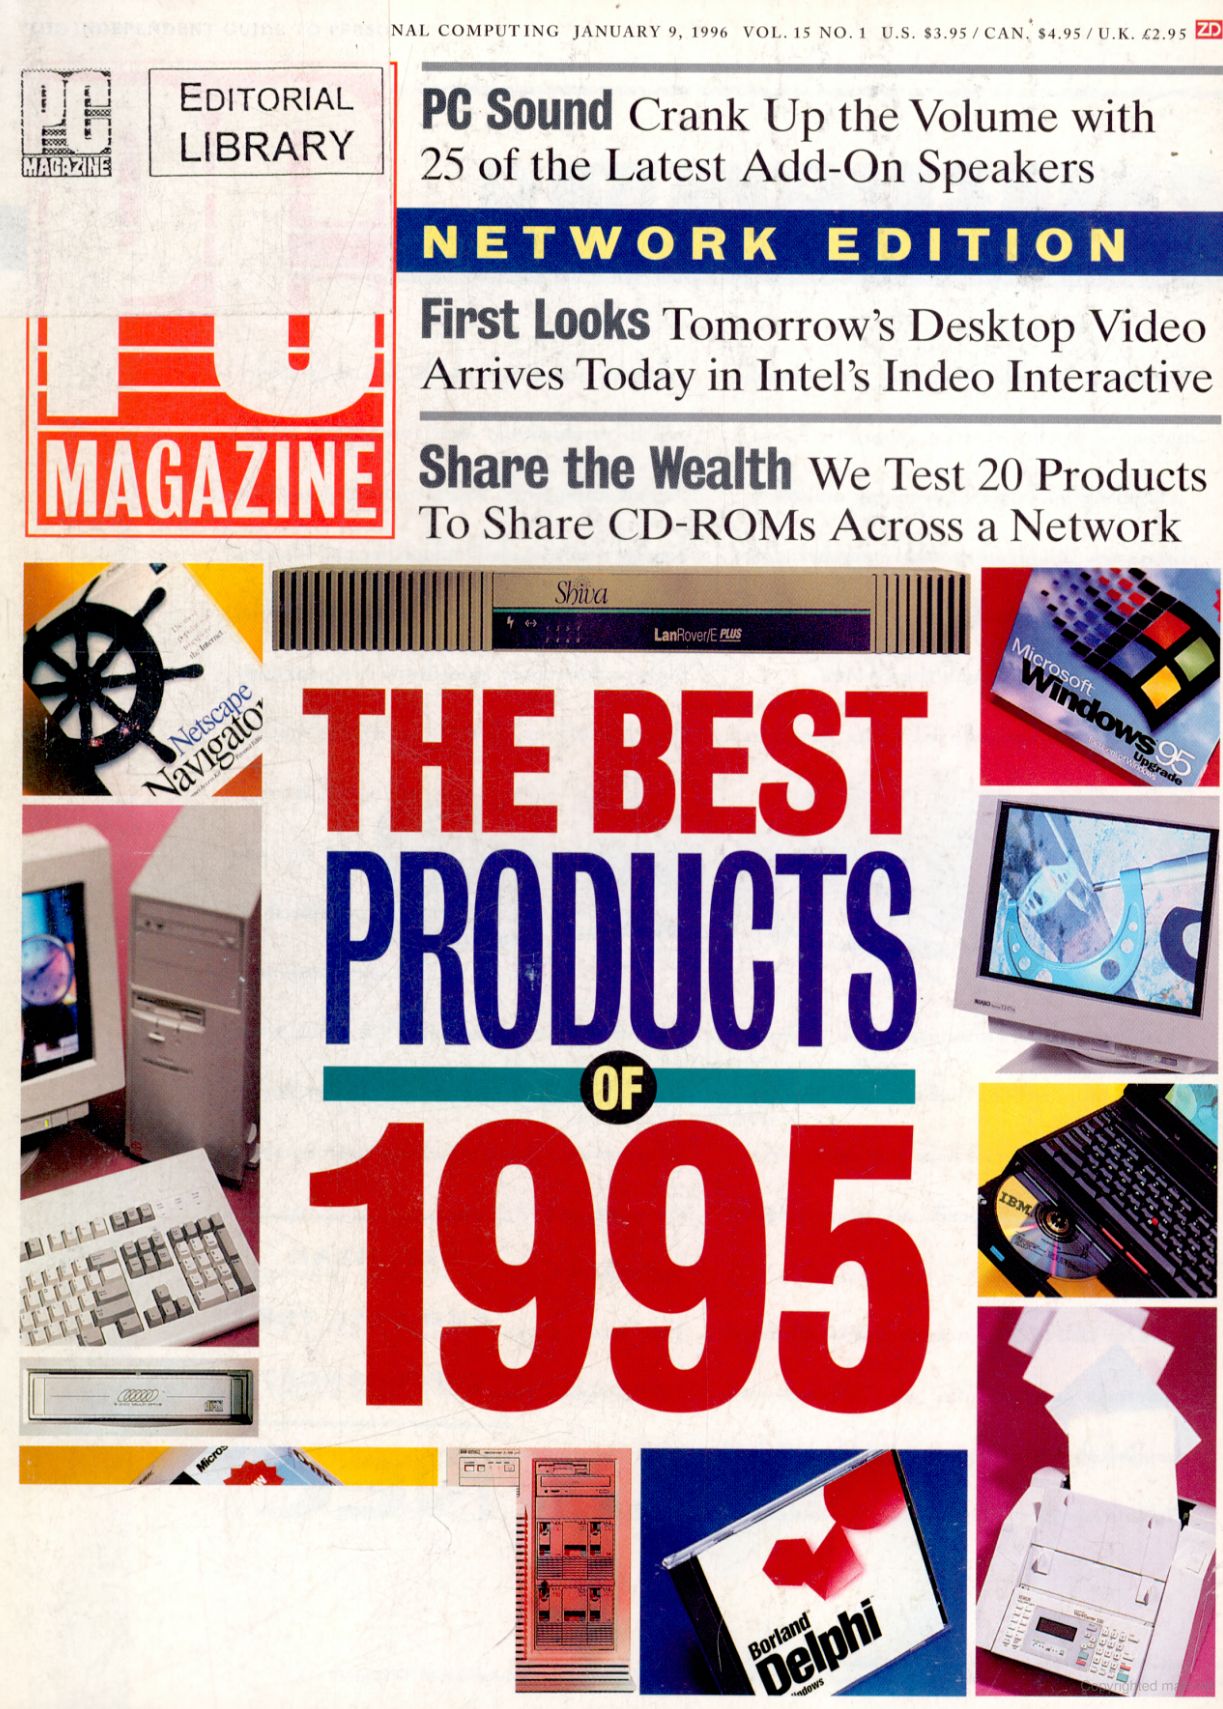 Древности: 20 лет компьютерных технологий в публикациях СМИ - 14